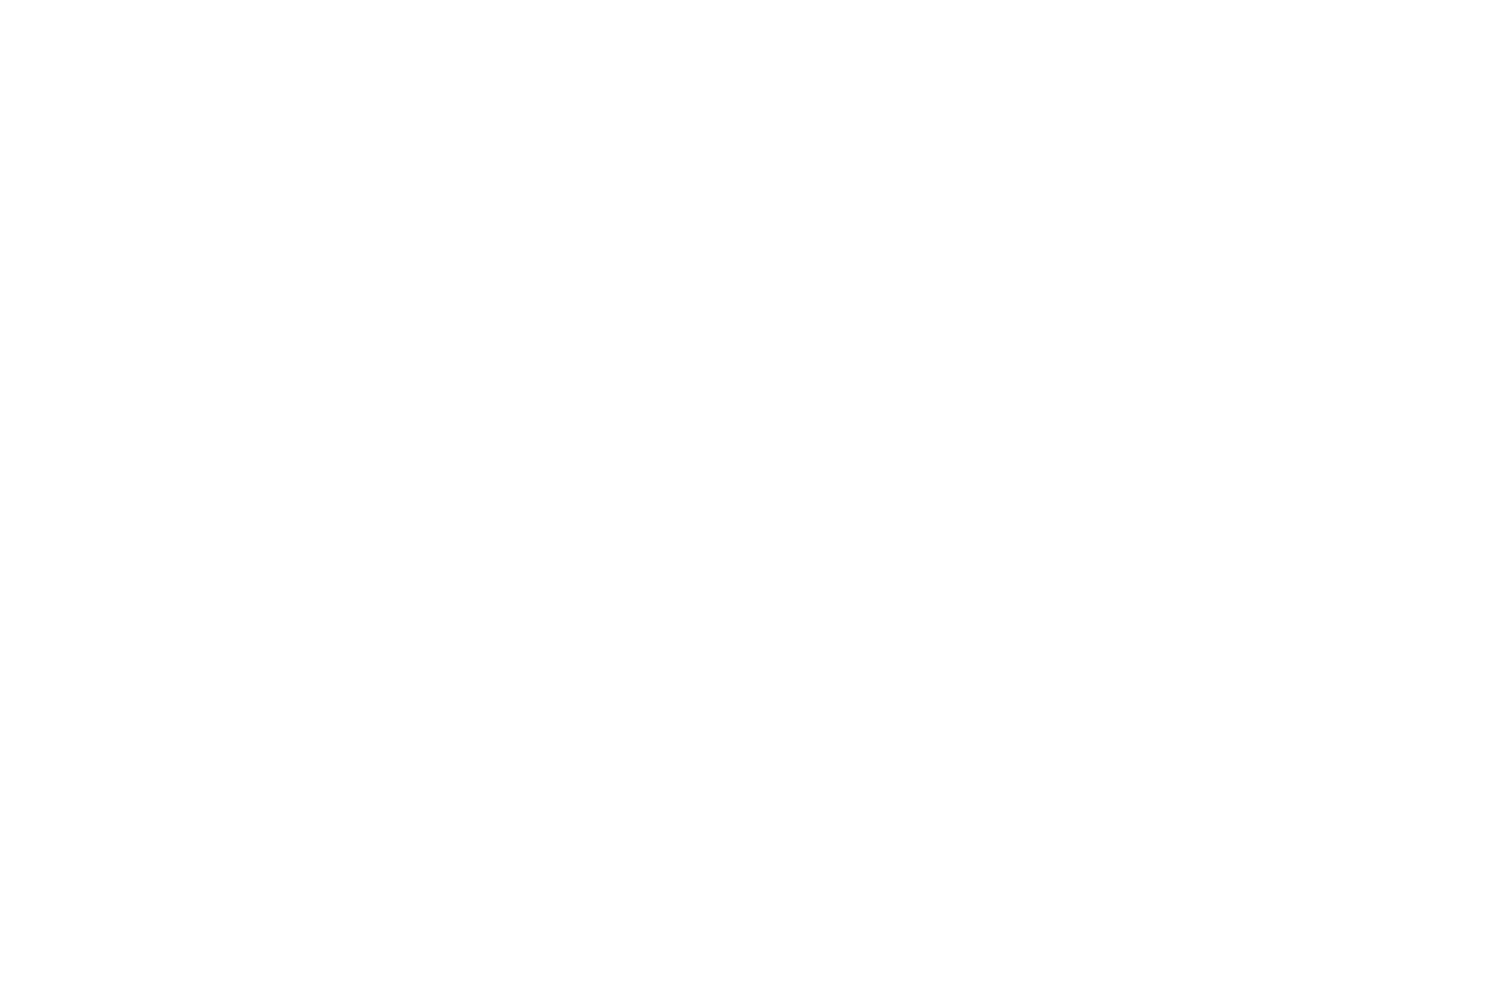 Feuerwerk Illustration in weiss